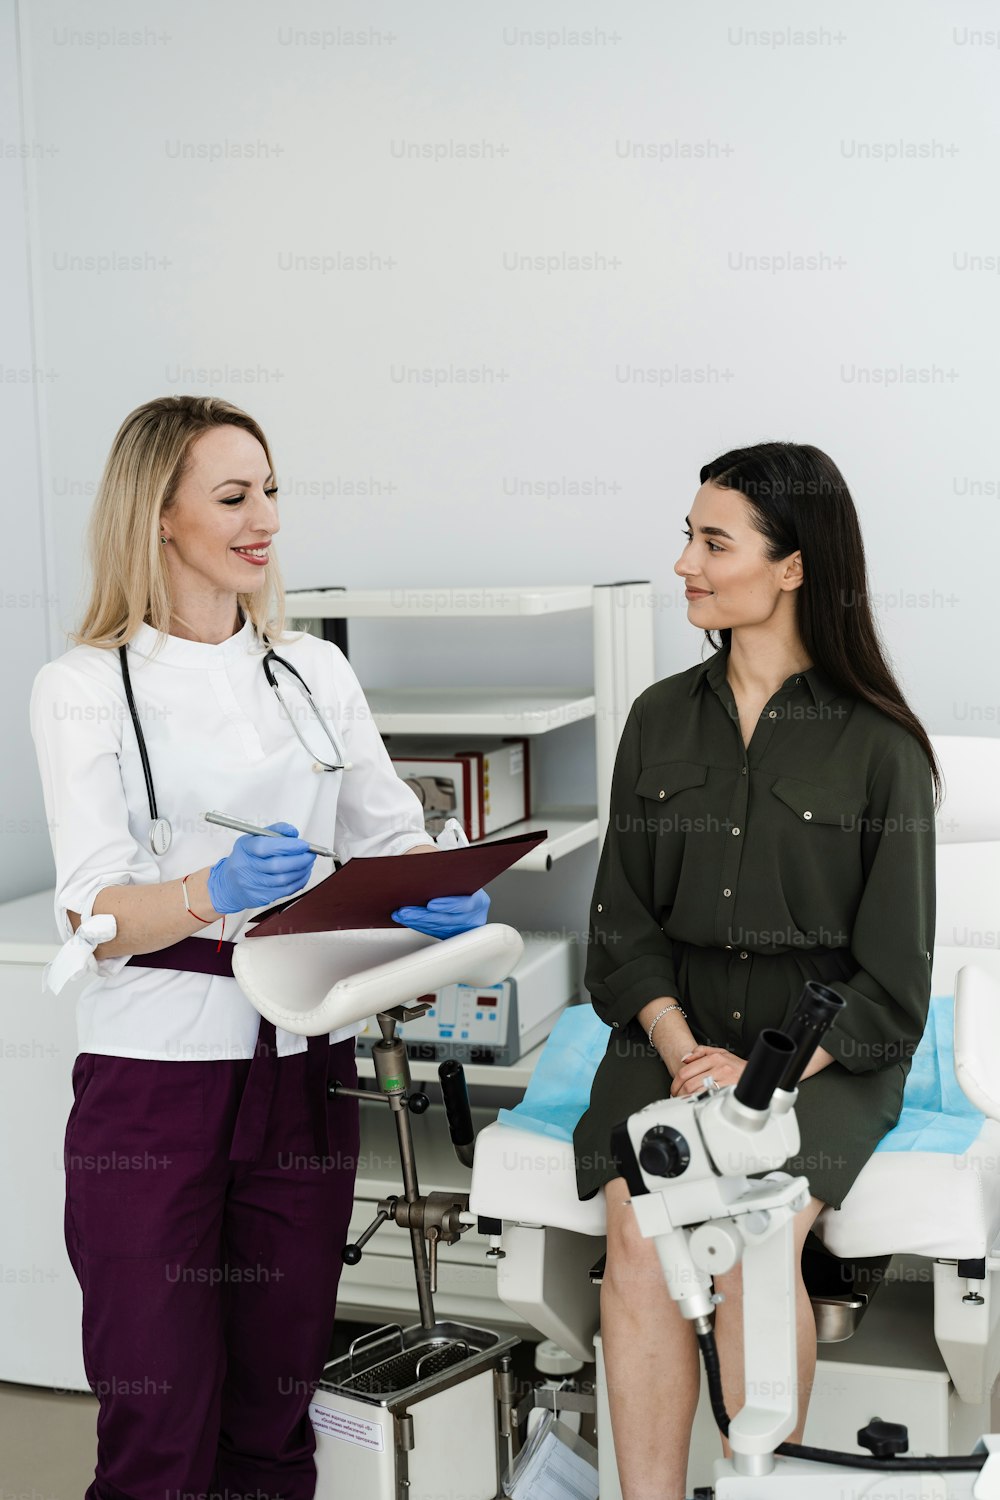 Consultazione con il ginecologo prima della colposcopia e della procedura di pap test per esaminare da vicino la cervice, la vagina e la vulva della ragazza nella clinica ginecologica